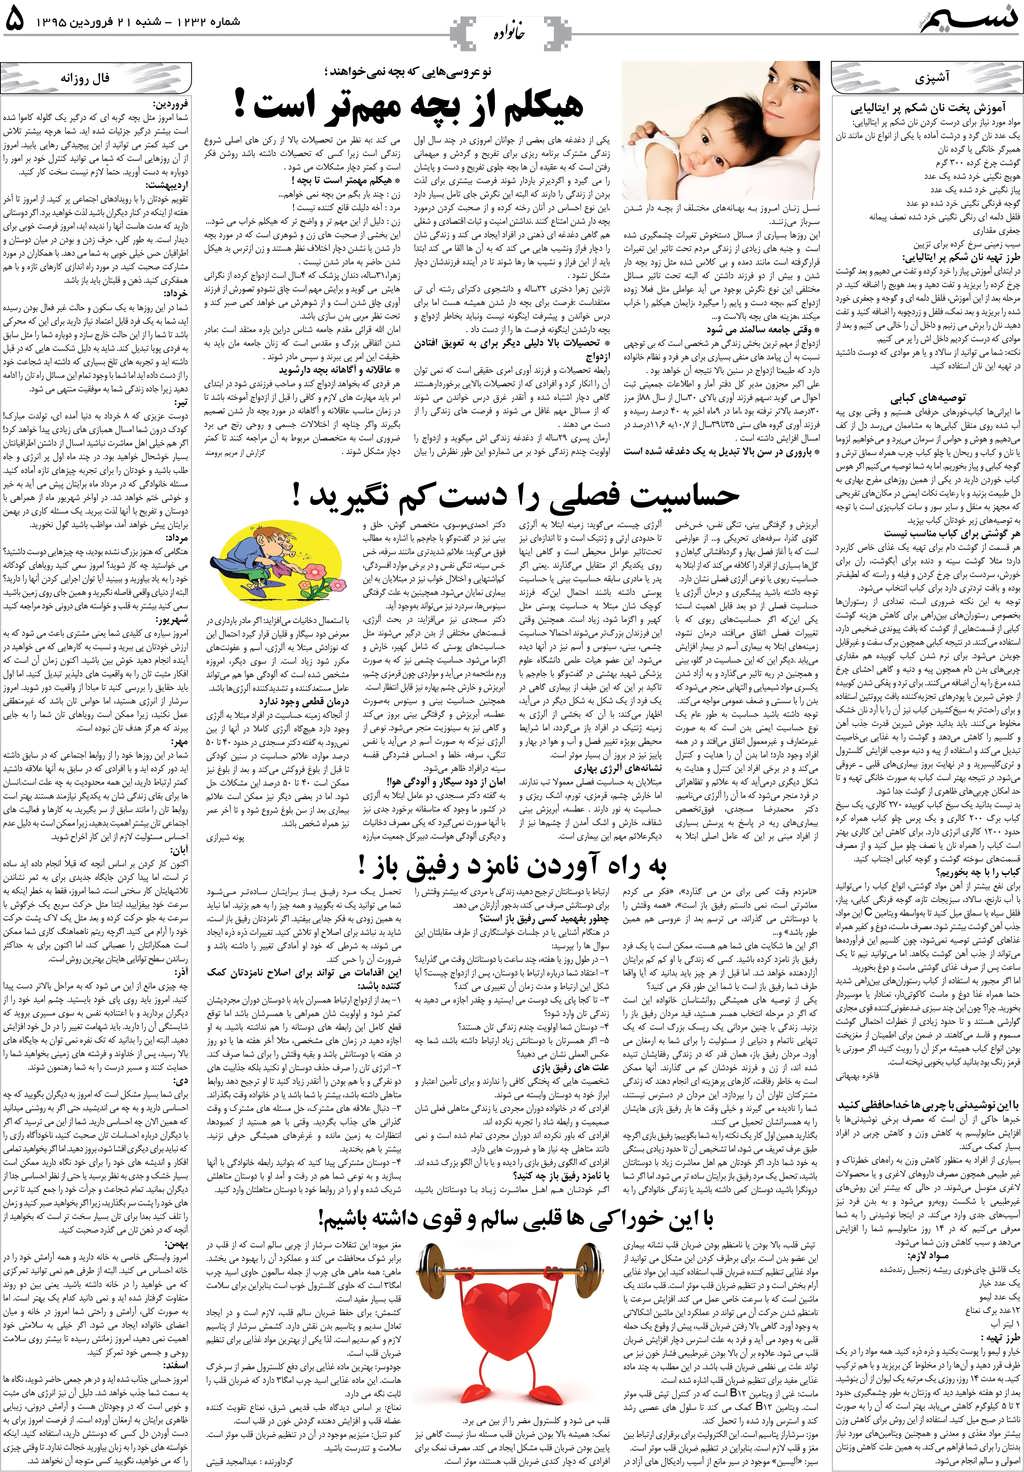 صفحه خانواده روزنامه نسیم شماره 1232